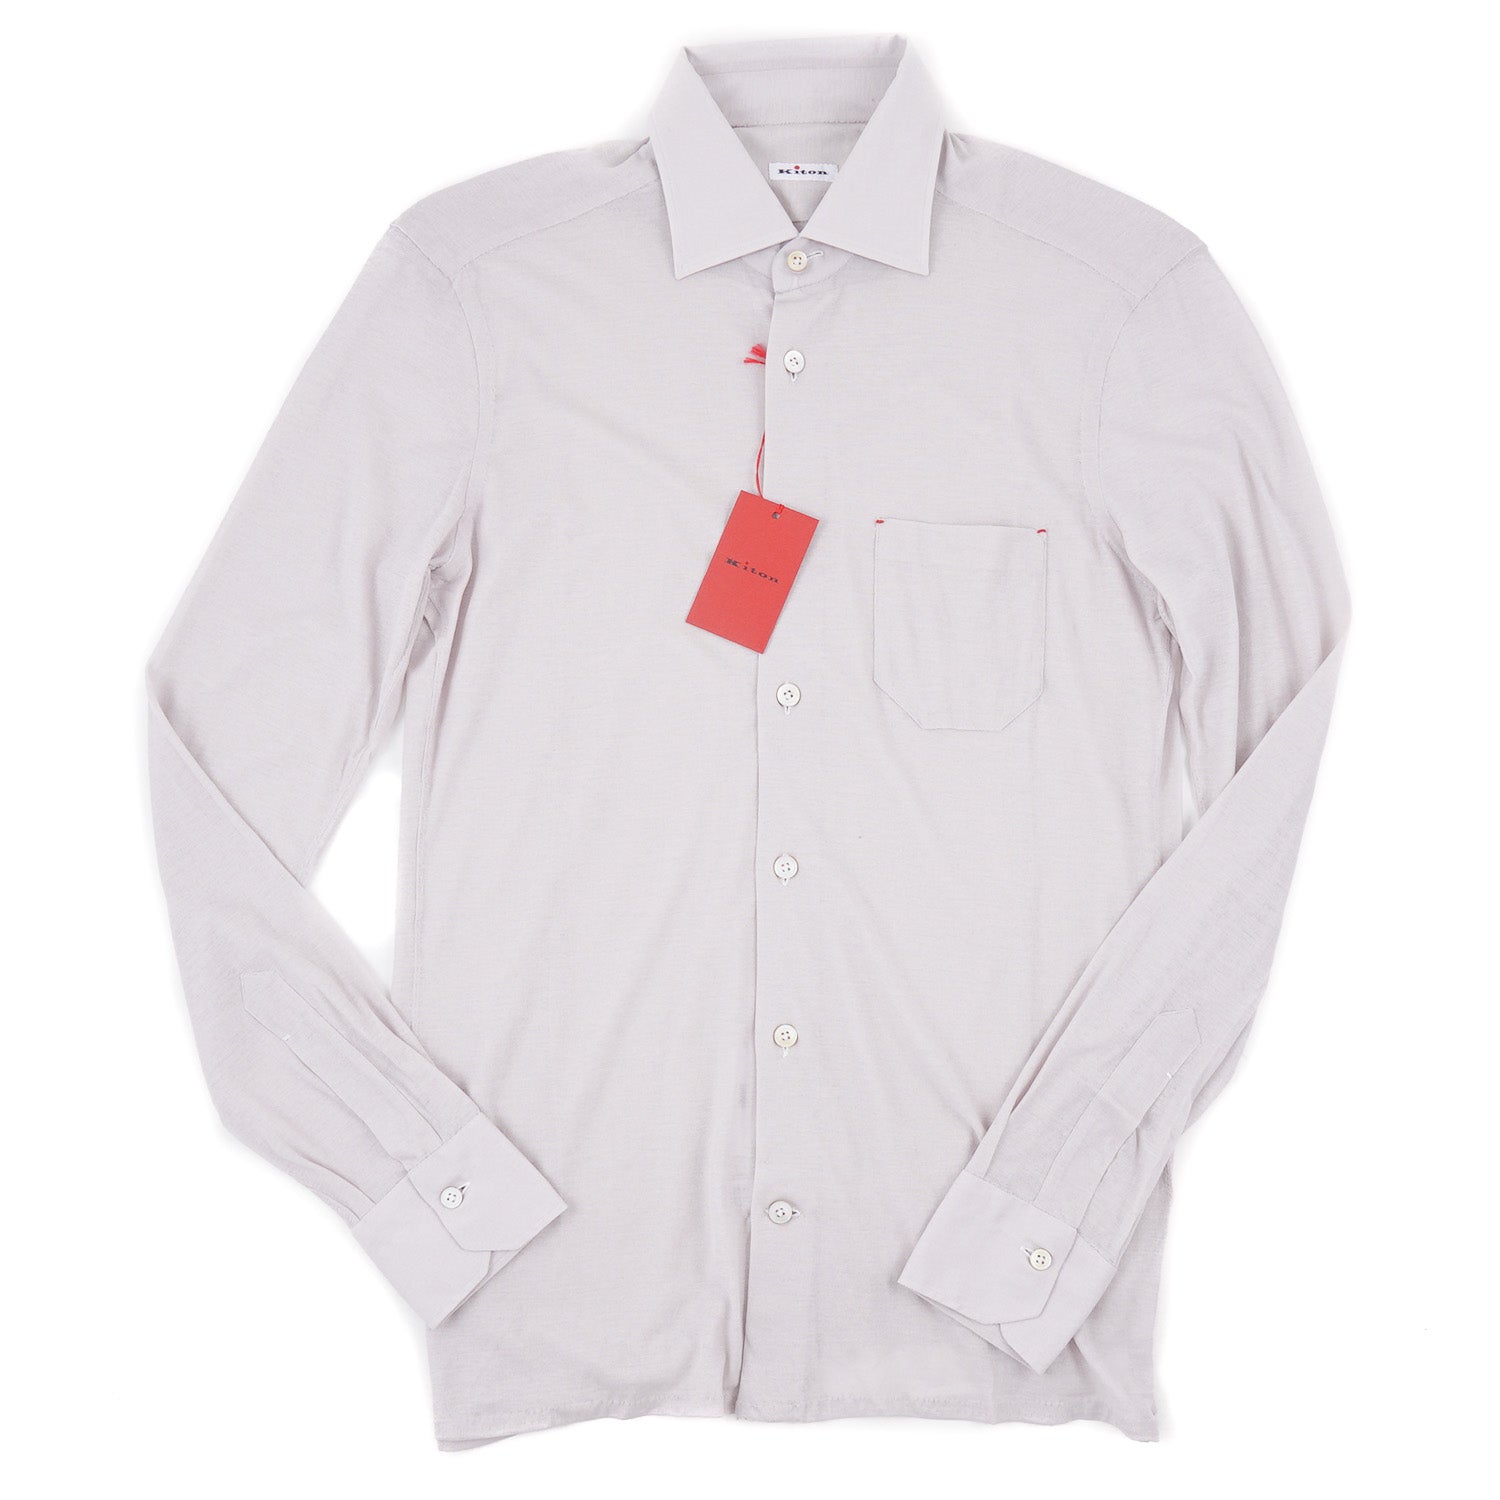 Kiton Lightweight Knit Jersey Cotton Shirt - Top Shelf Apparel